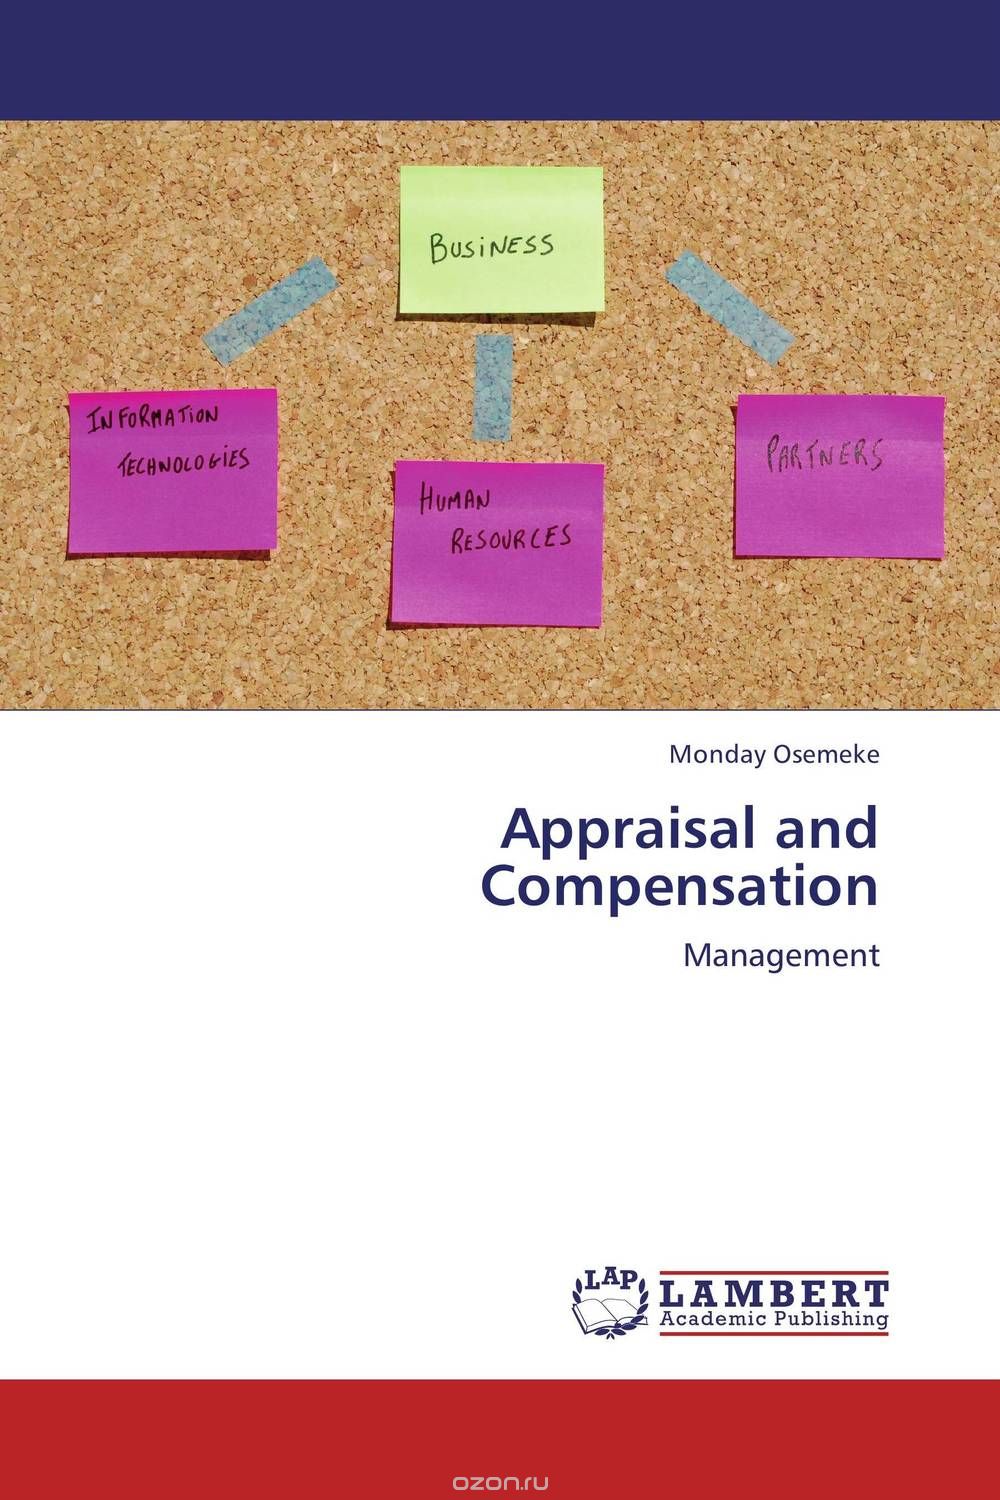 Скачать книгу "Appraisal and Compensation"